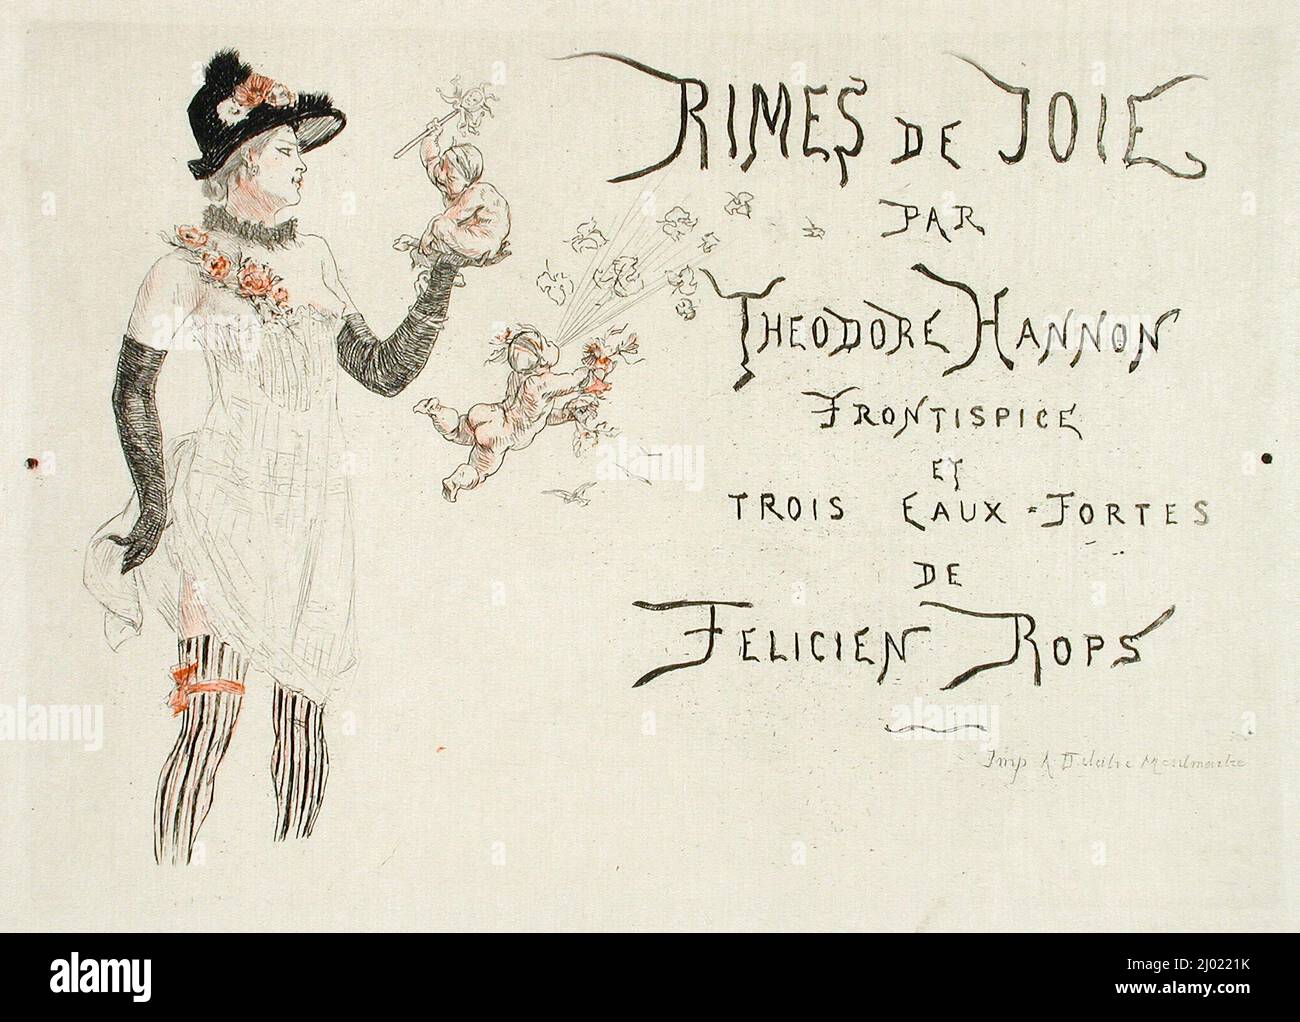 Affiche pour les « jantes de joie ». Félicien Victor Joseph ROPS (Belgique, Namur, 1833-1898). Belgique, pas de date. Tirages ; gravures. Décapage et point sec possible Banque D'Images